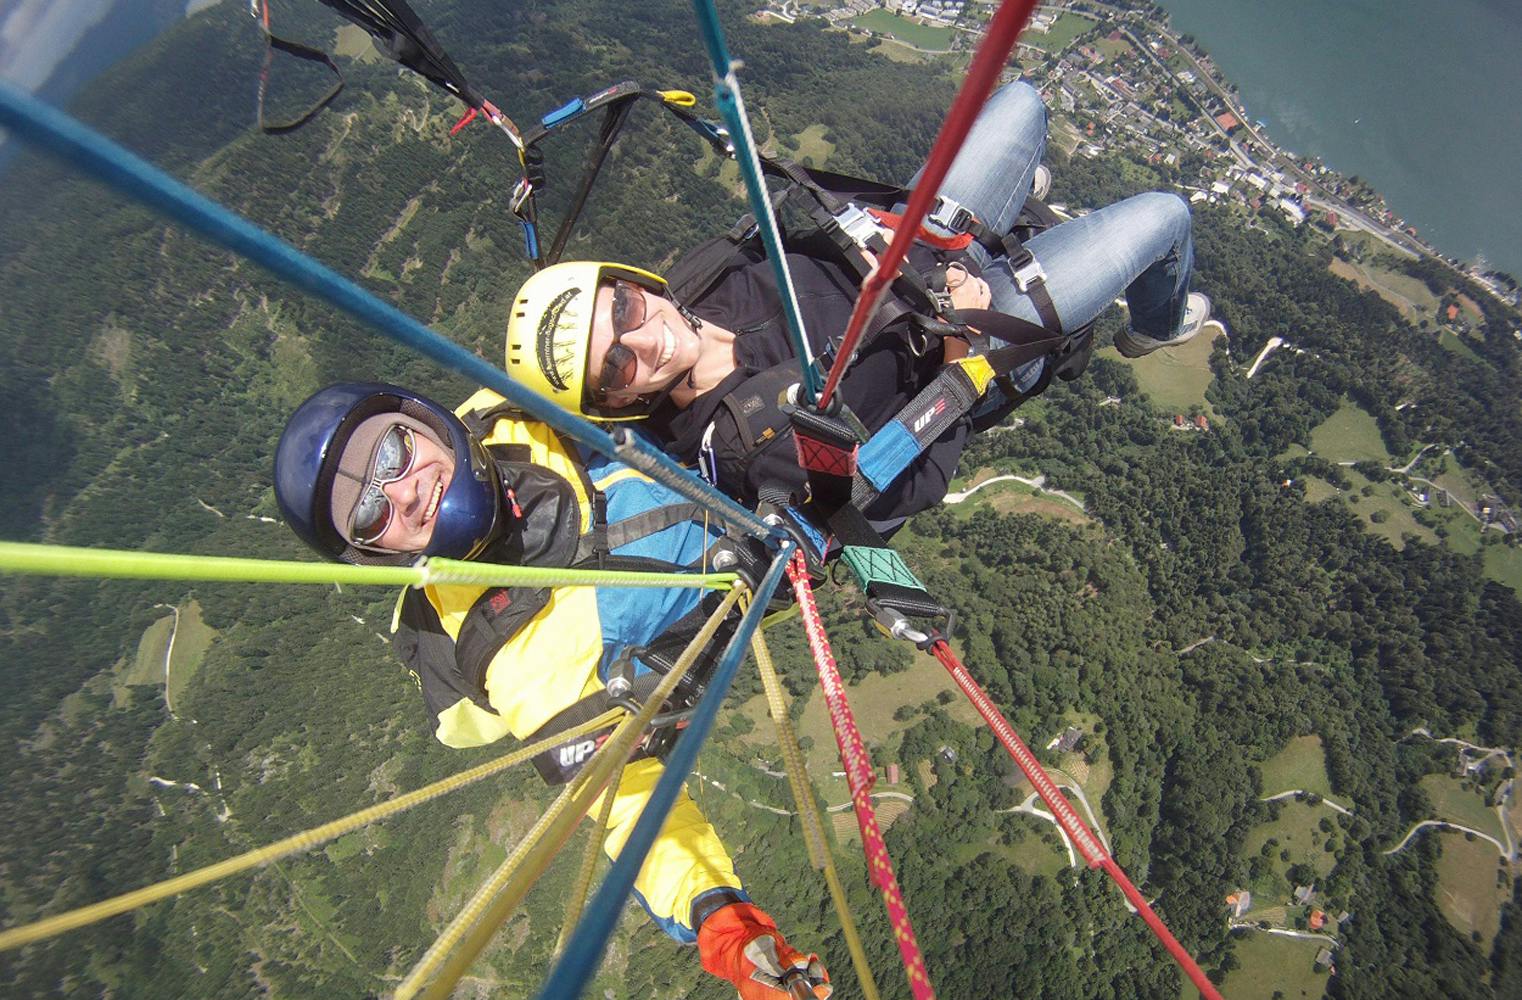 Gleitschirm Actionflug | der Adrenalinkick über Kärnten